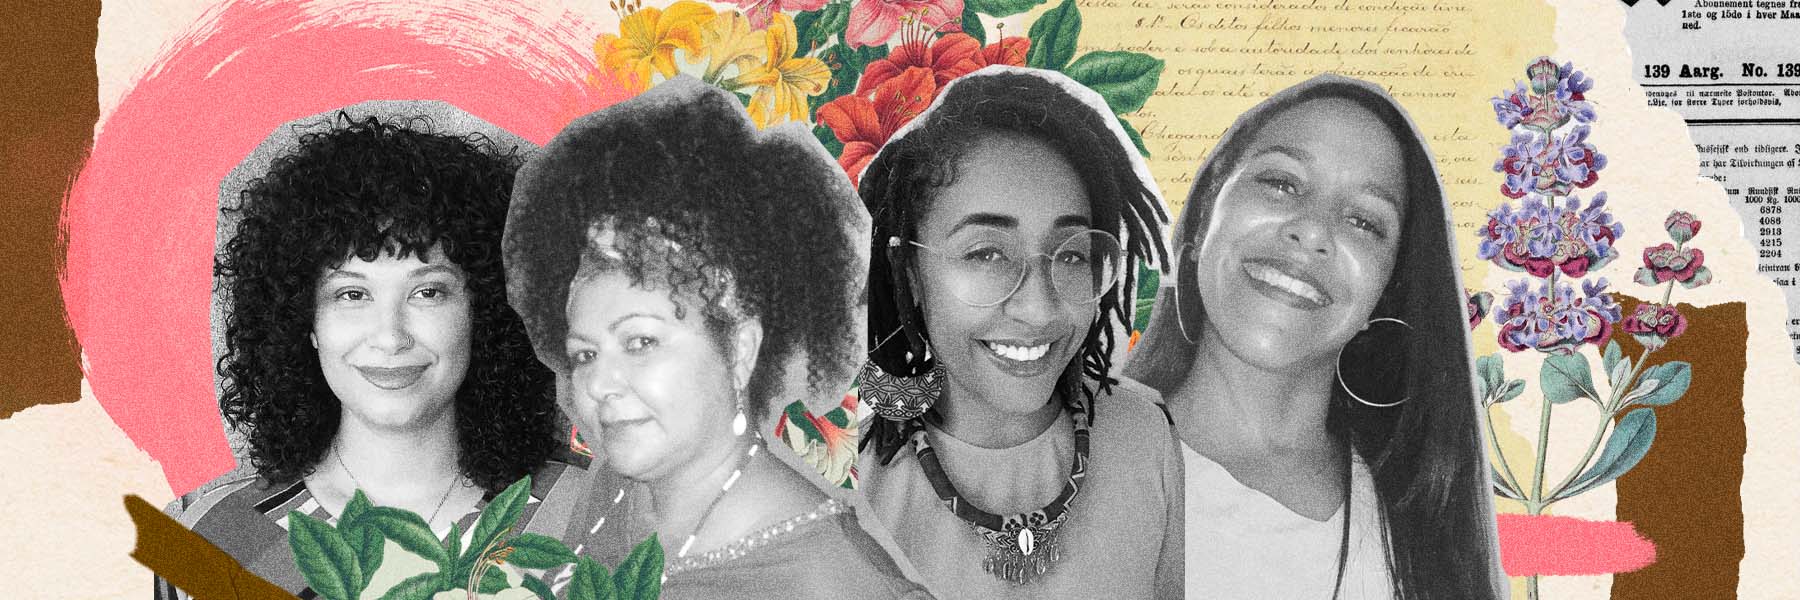 Ventre livre? 150 anos depois da Lei, mães negras seguem lutando pela verdadeira liberdade dos filhos